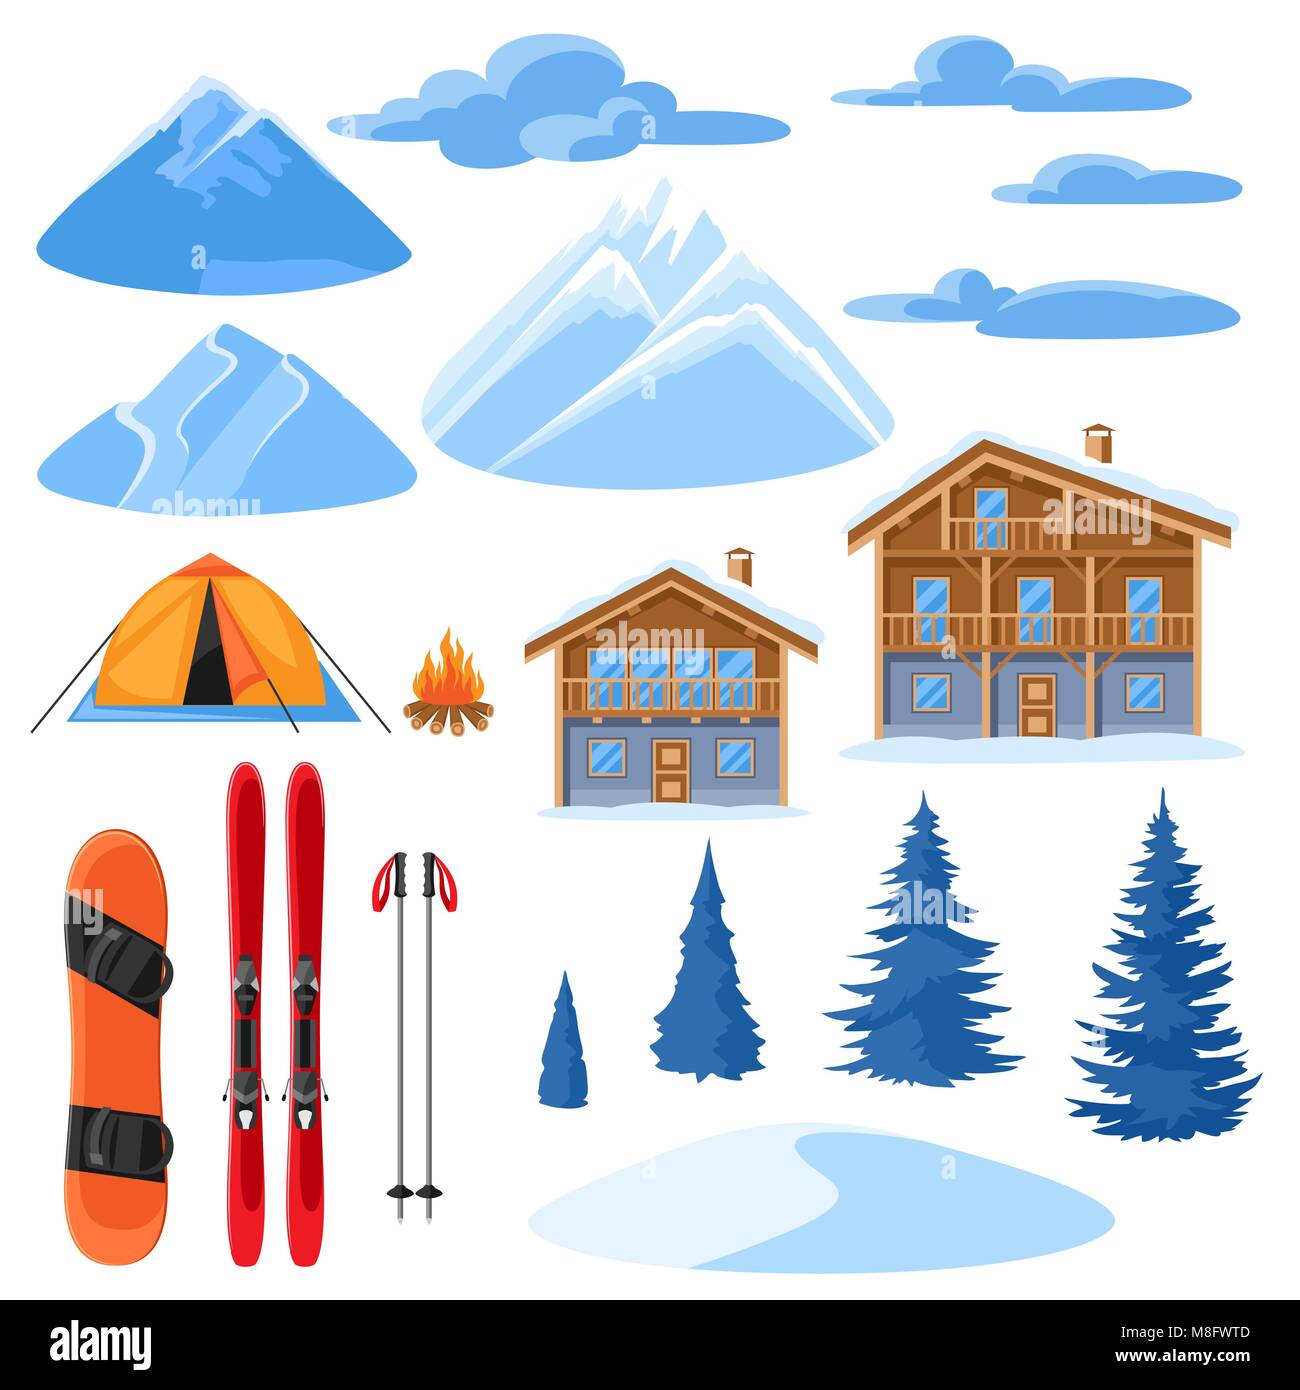 Winter set für Design. Alpine Chalet Häuser, Snowboard, Ski, verschneite Berge und Tannen Stock Vektor